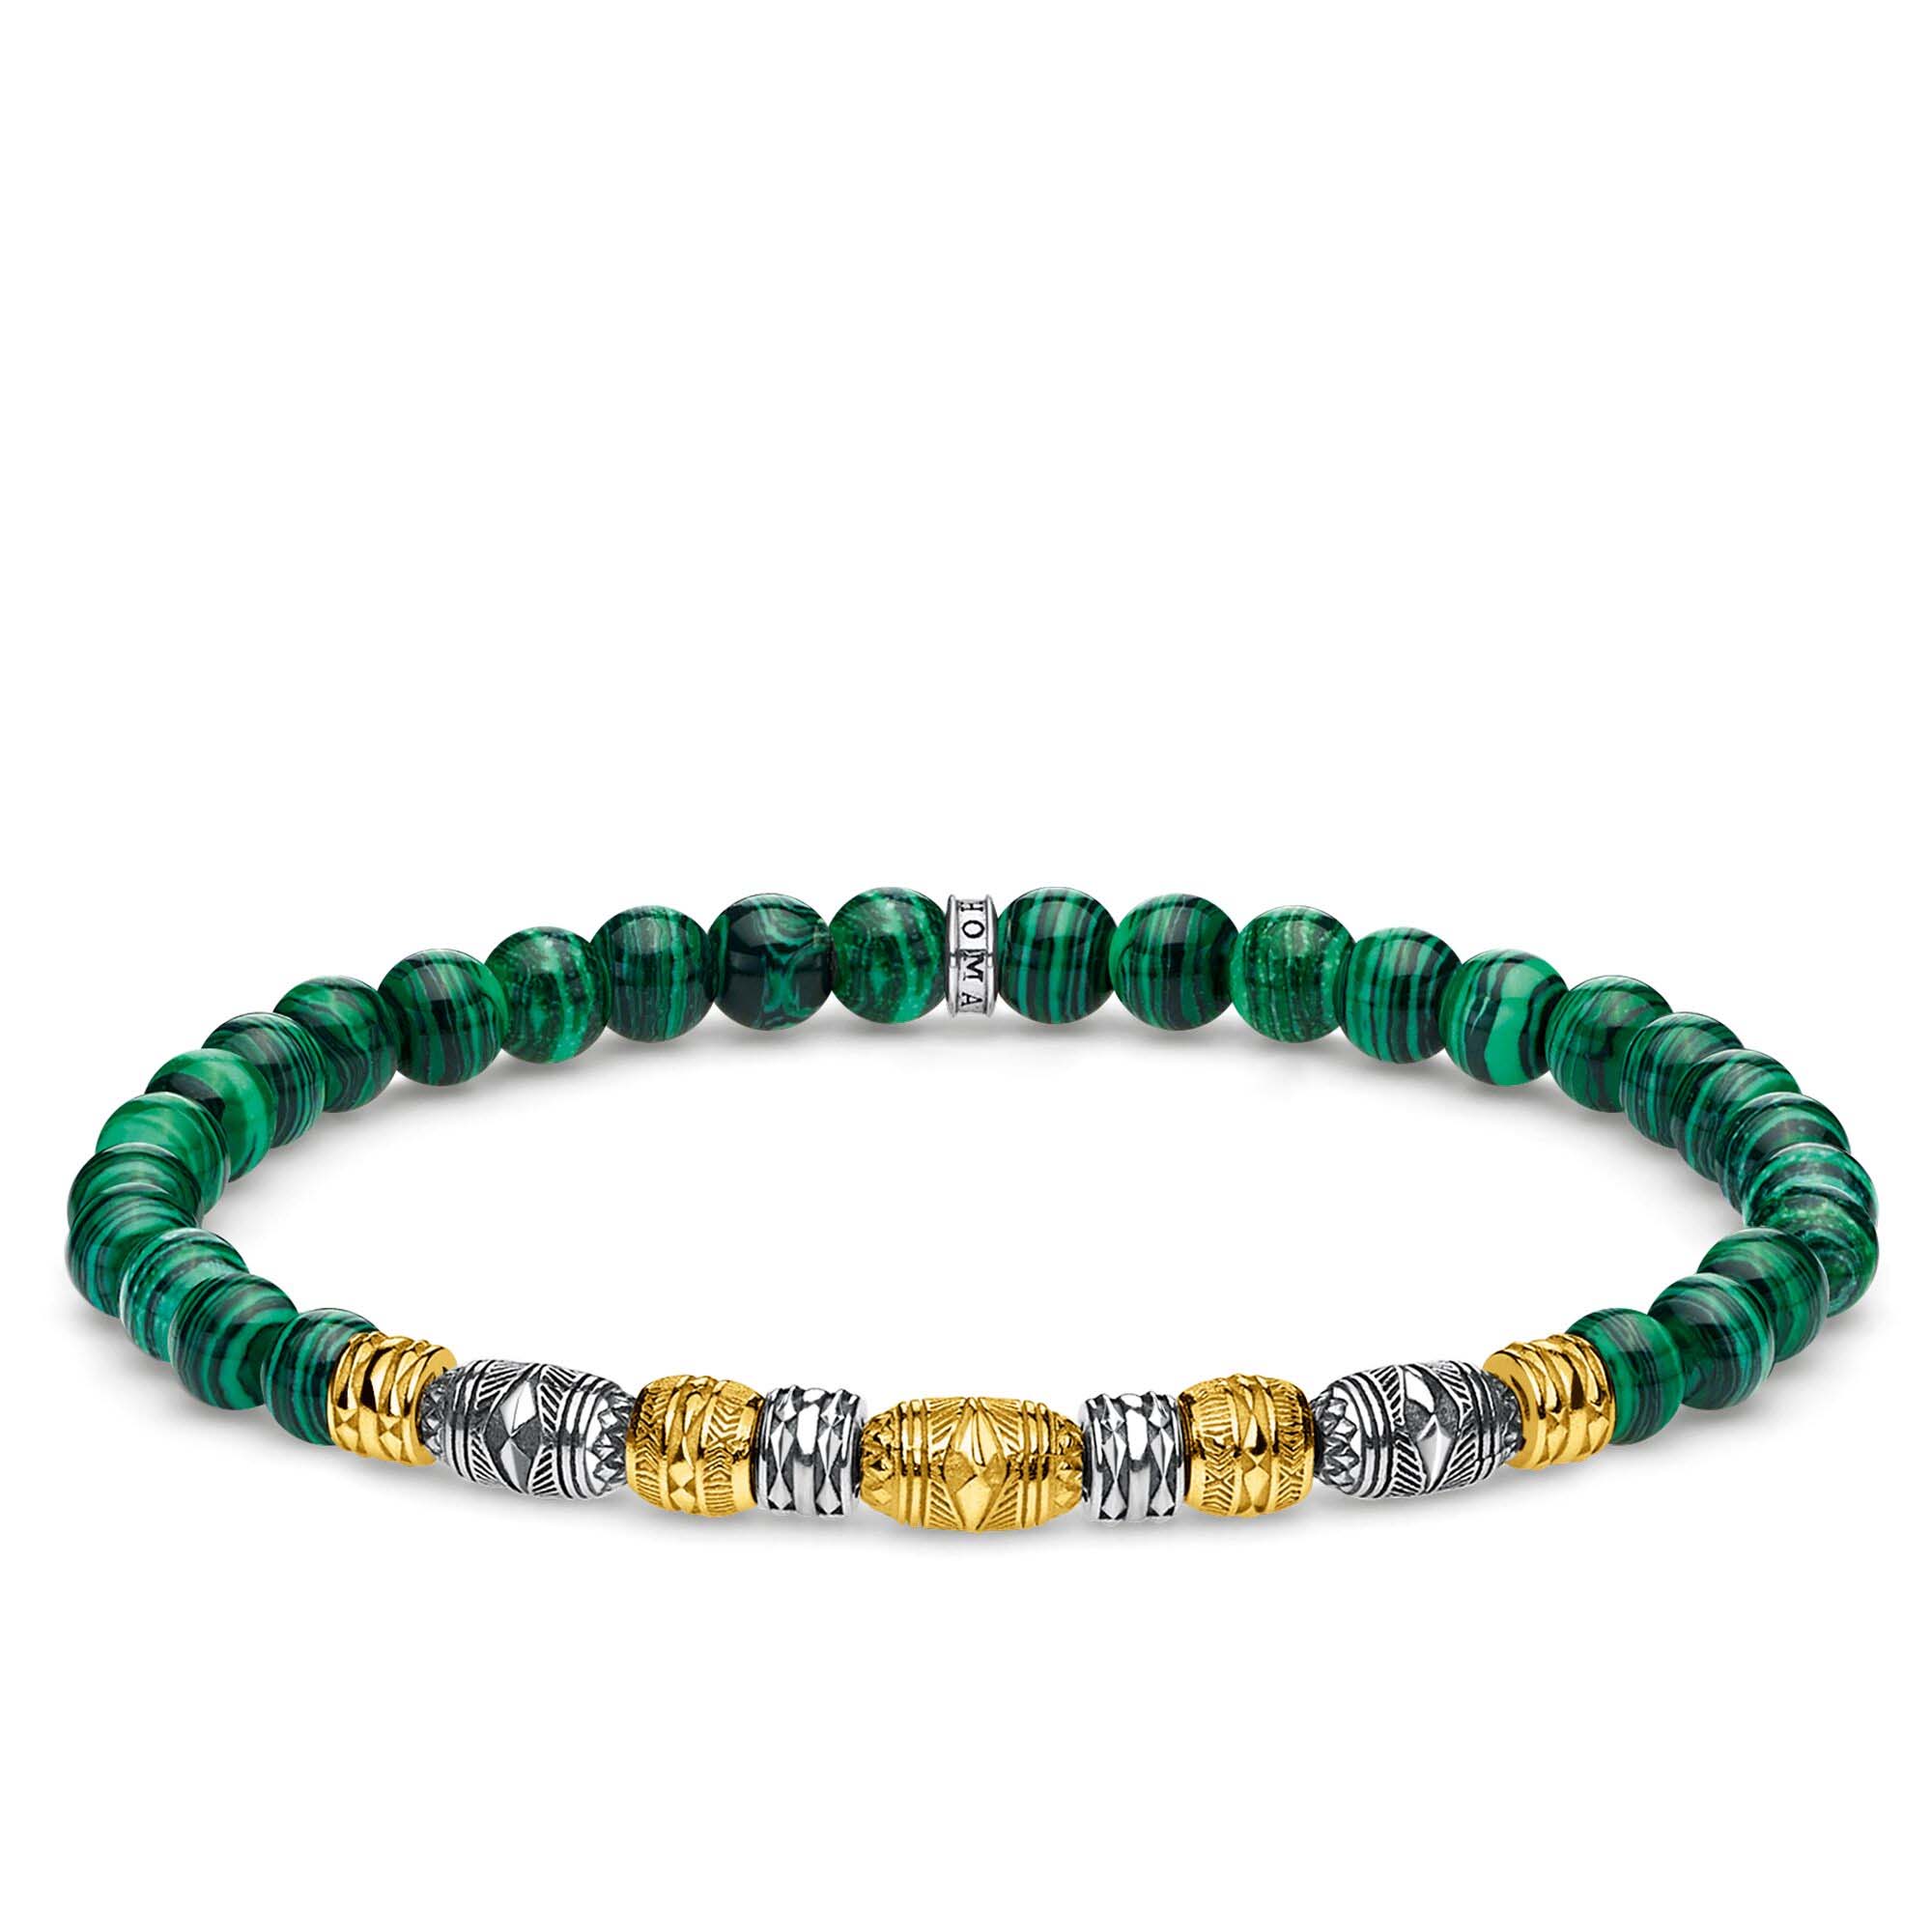 Vente en gros de bijoux OEM / ODM Bijoux pour hommes italiens personnalisés Bracelet plaqué or jaune 18 carats, argent sterling 925, noirci